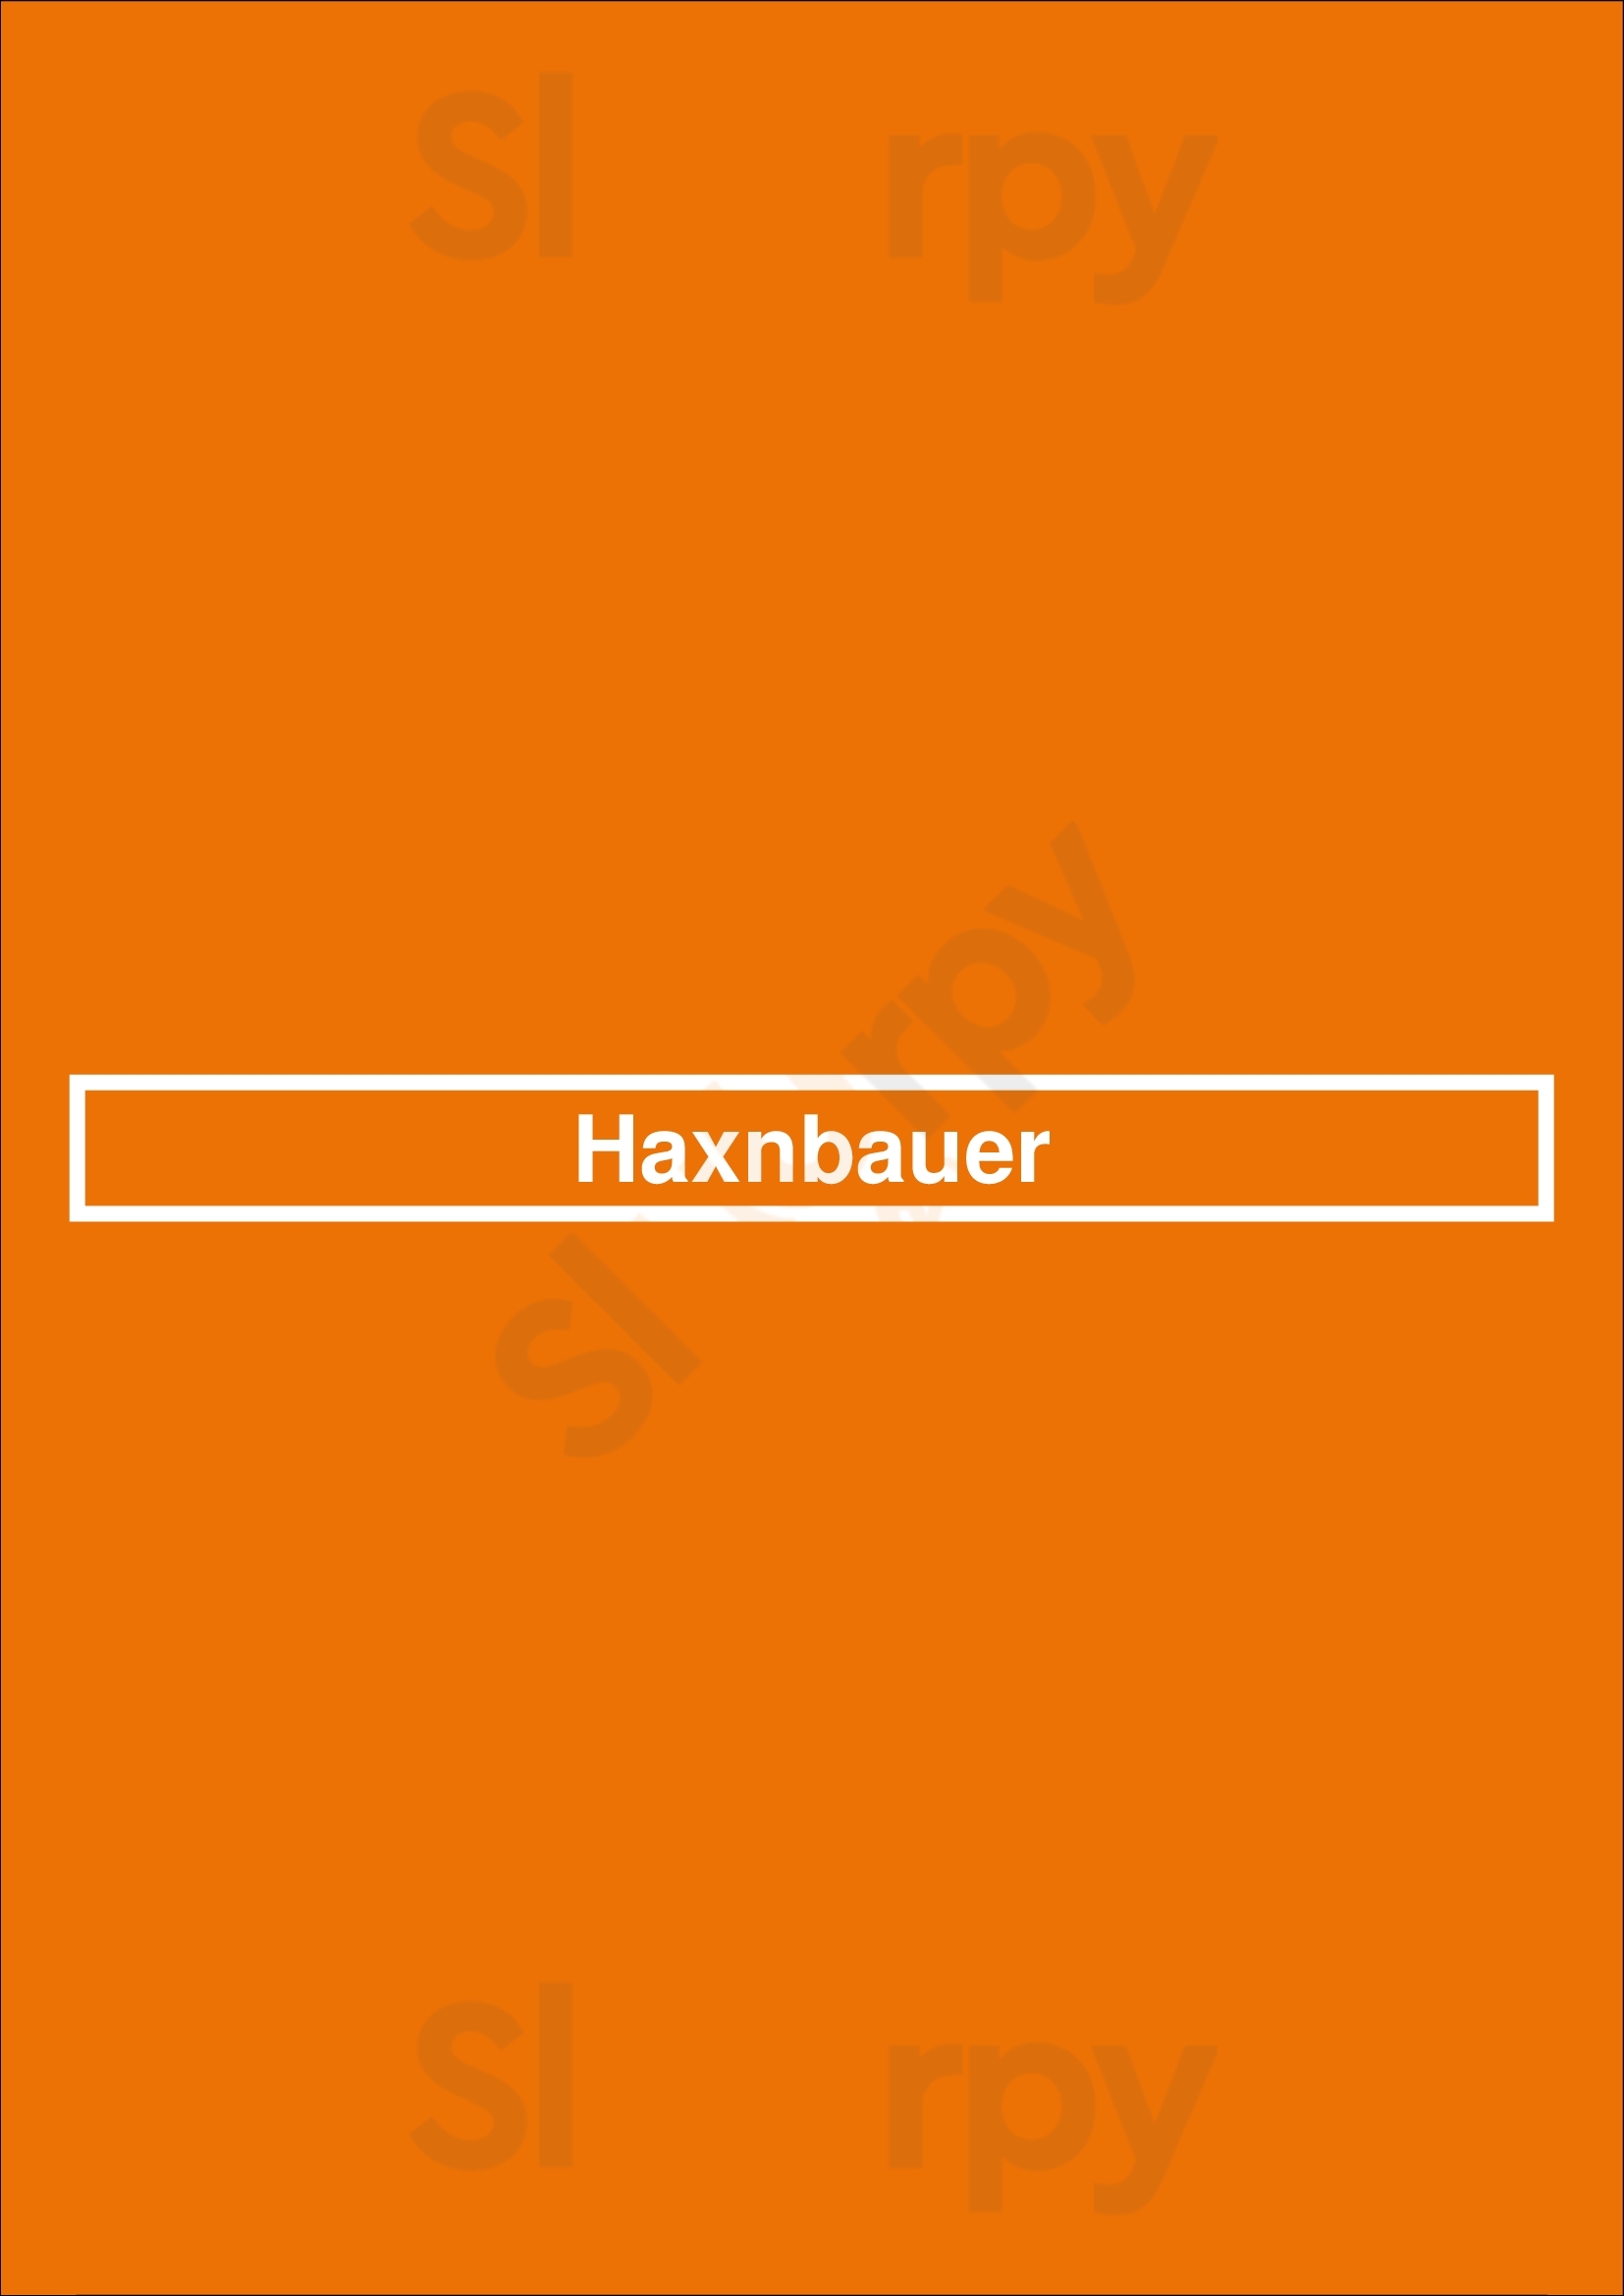 Haxnbauer München Menu - 1